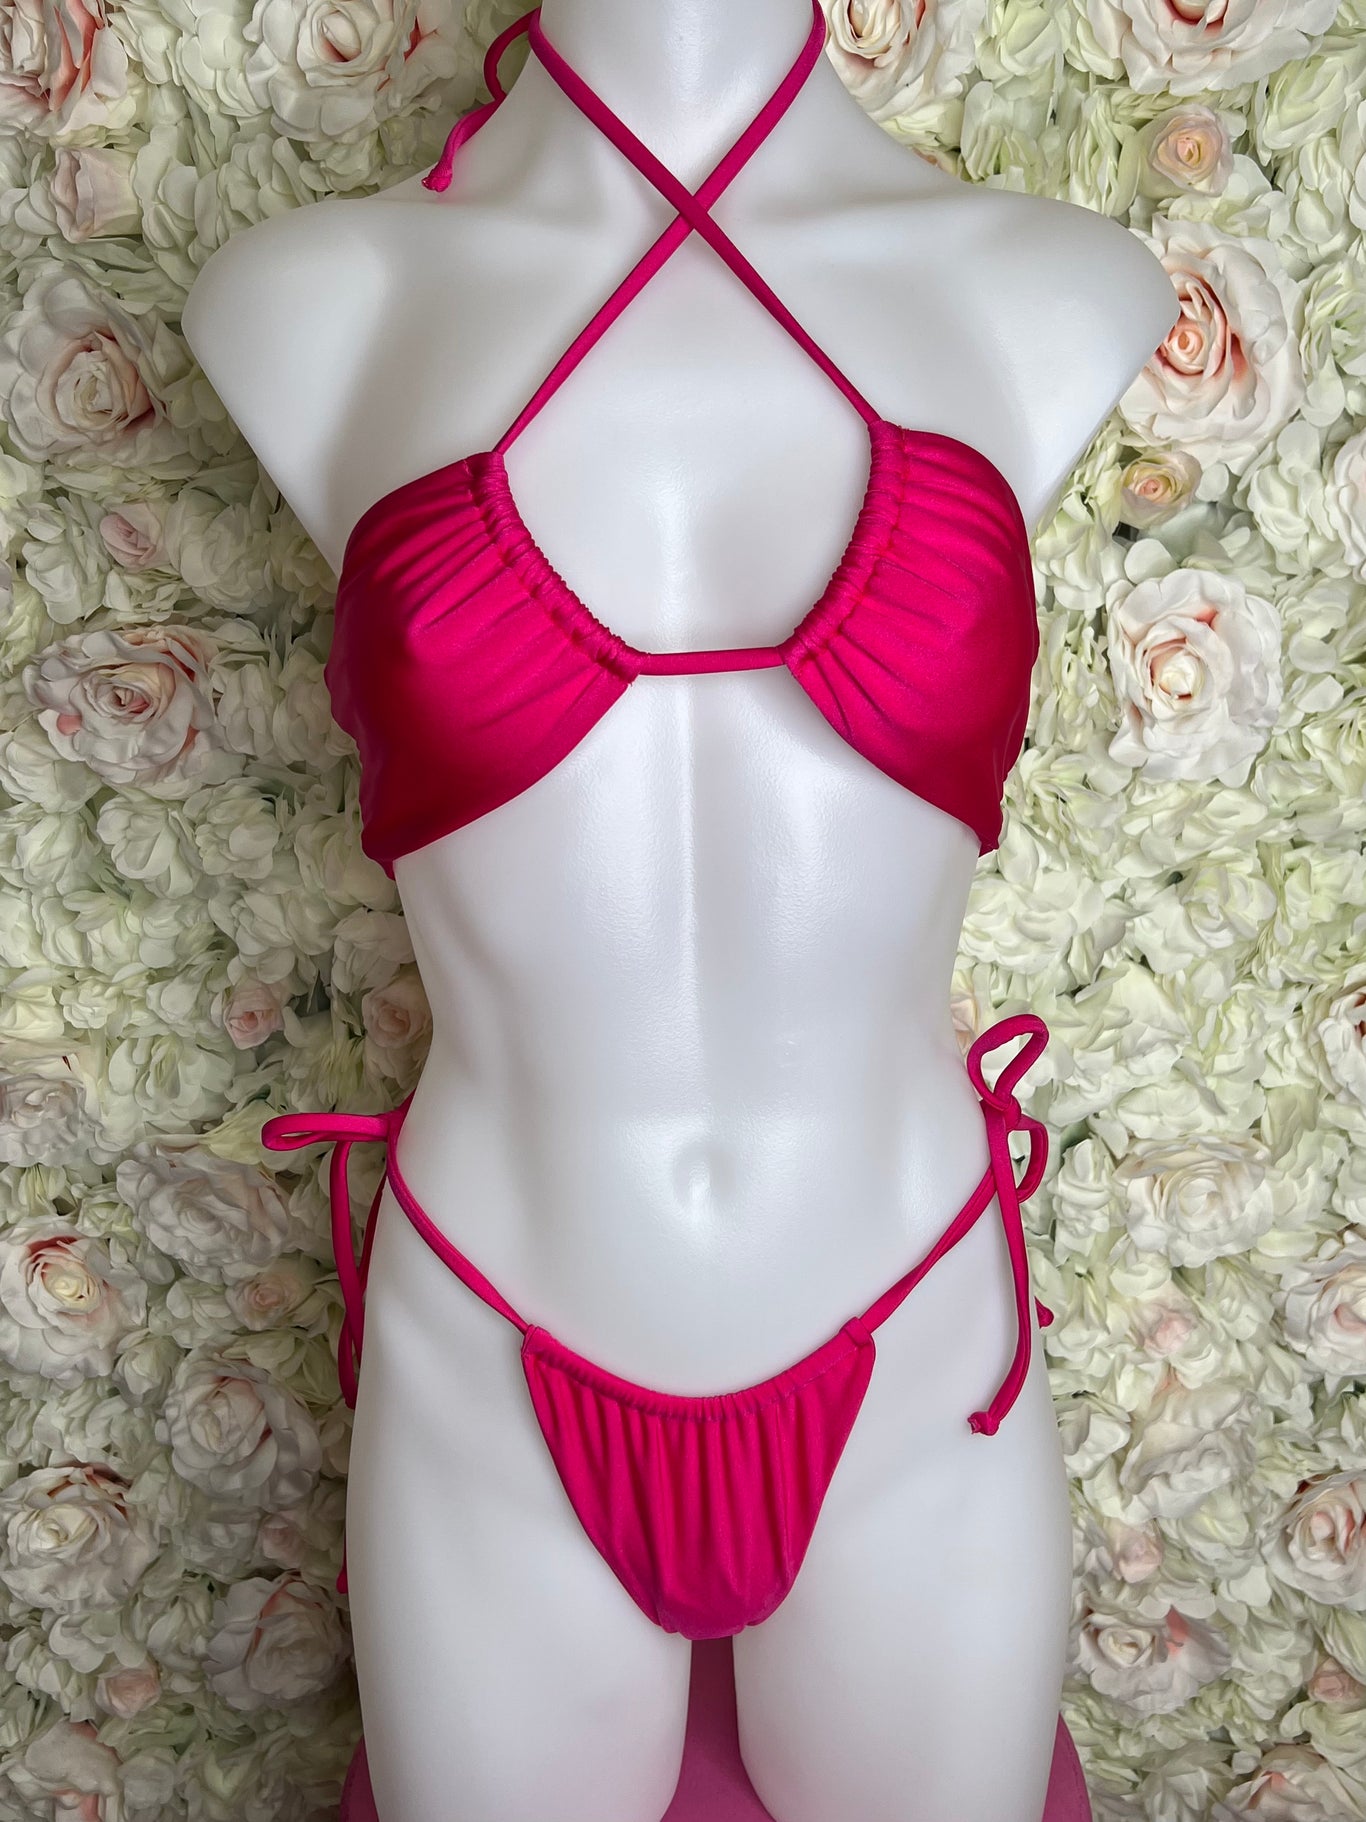 SAMPLE 32 - Berry Beachy Swimwear